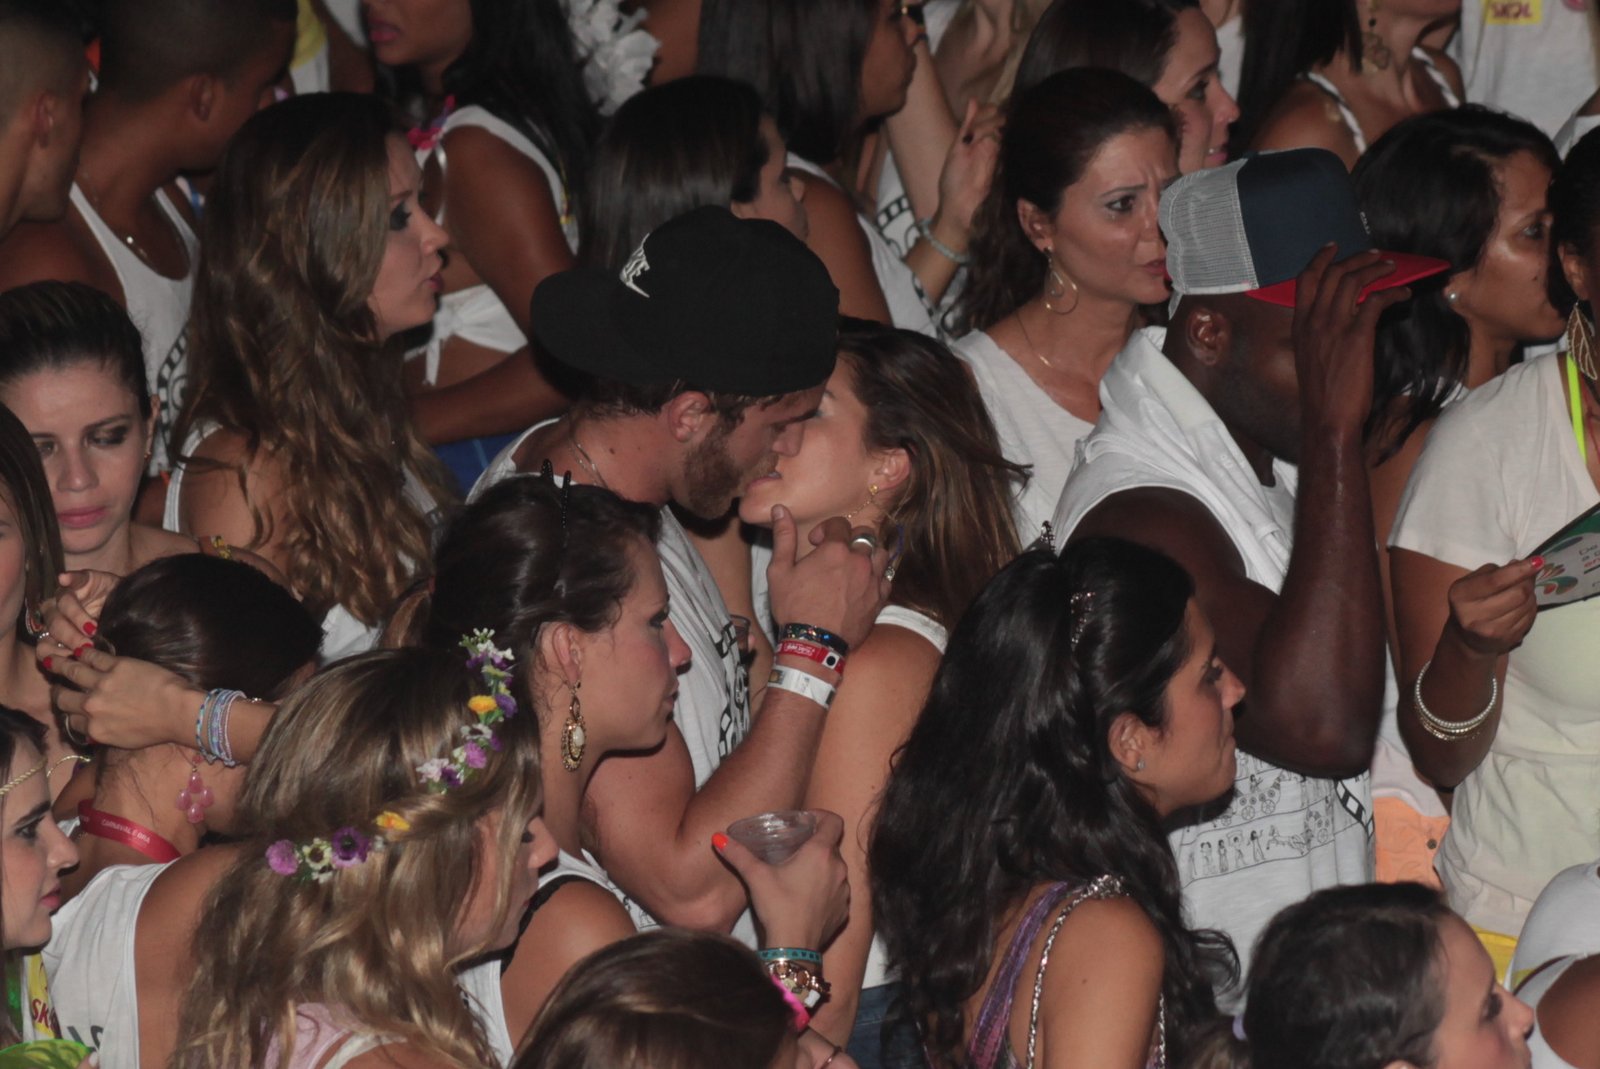 Fernanda Paes Leme troca beijos calientes durante show em Salvador